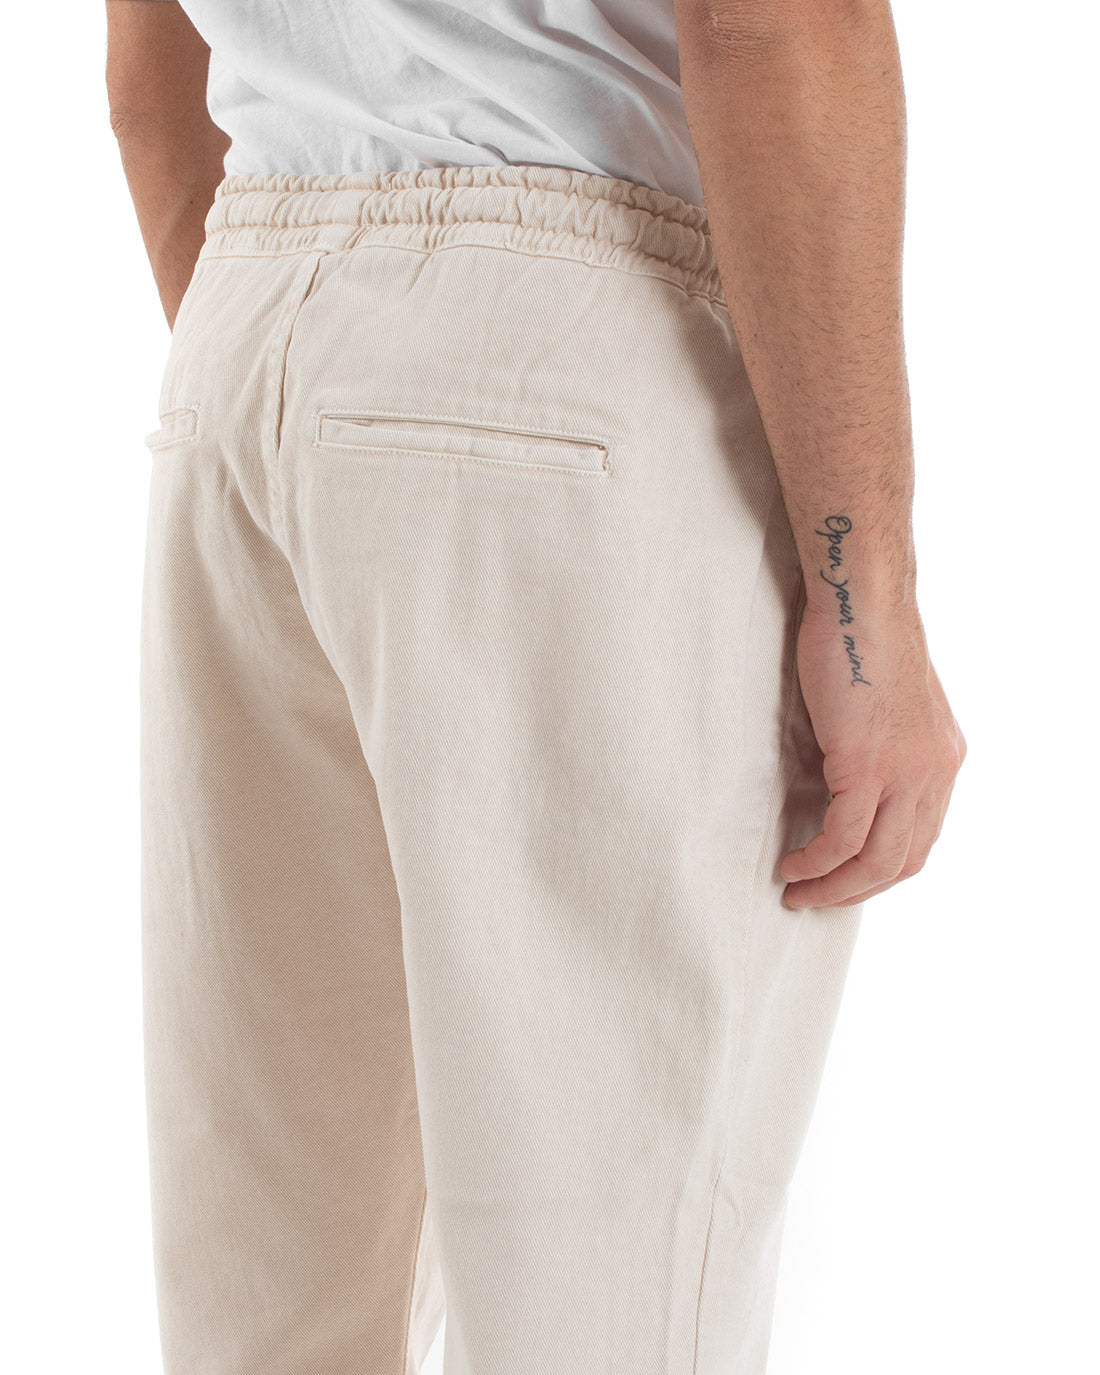 Pantaloni Uomo Pantalaccio Comodo Cotone Elastico Casual Basic Panna GIOSAL-P5555A